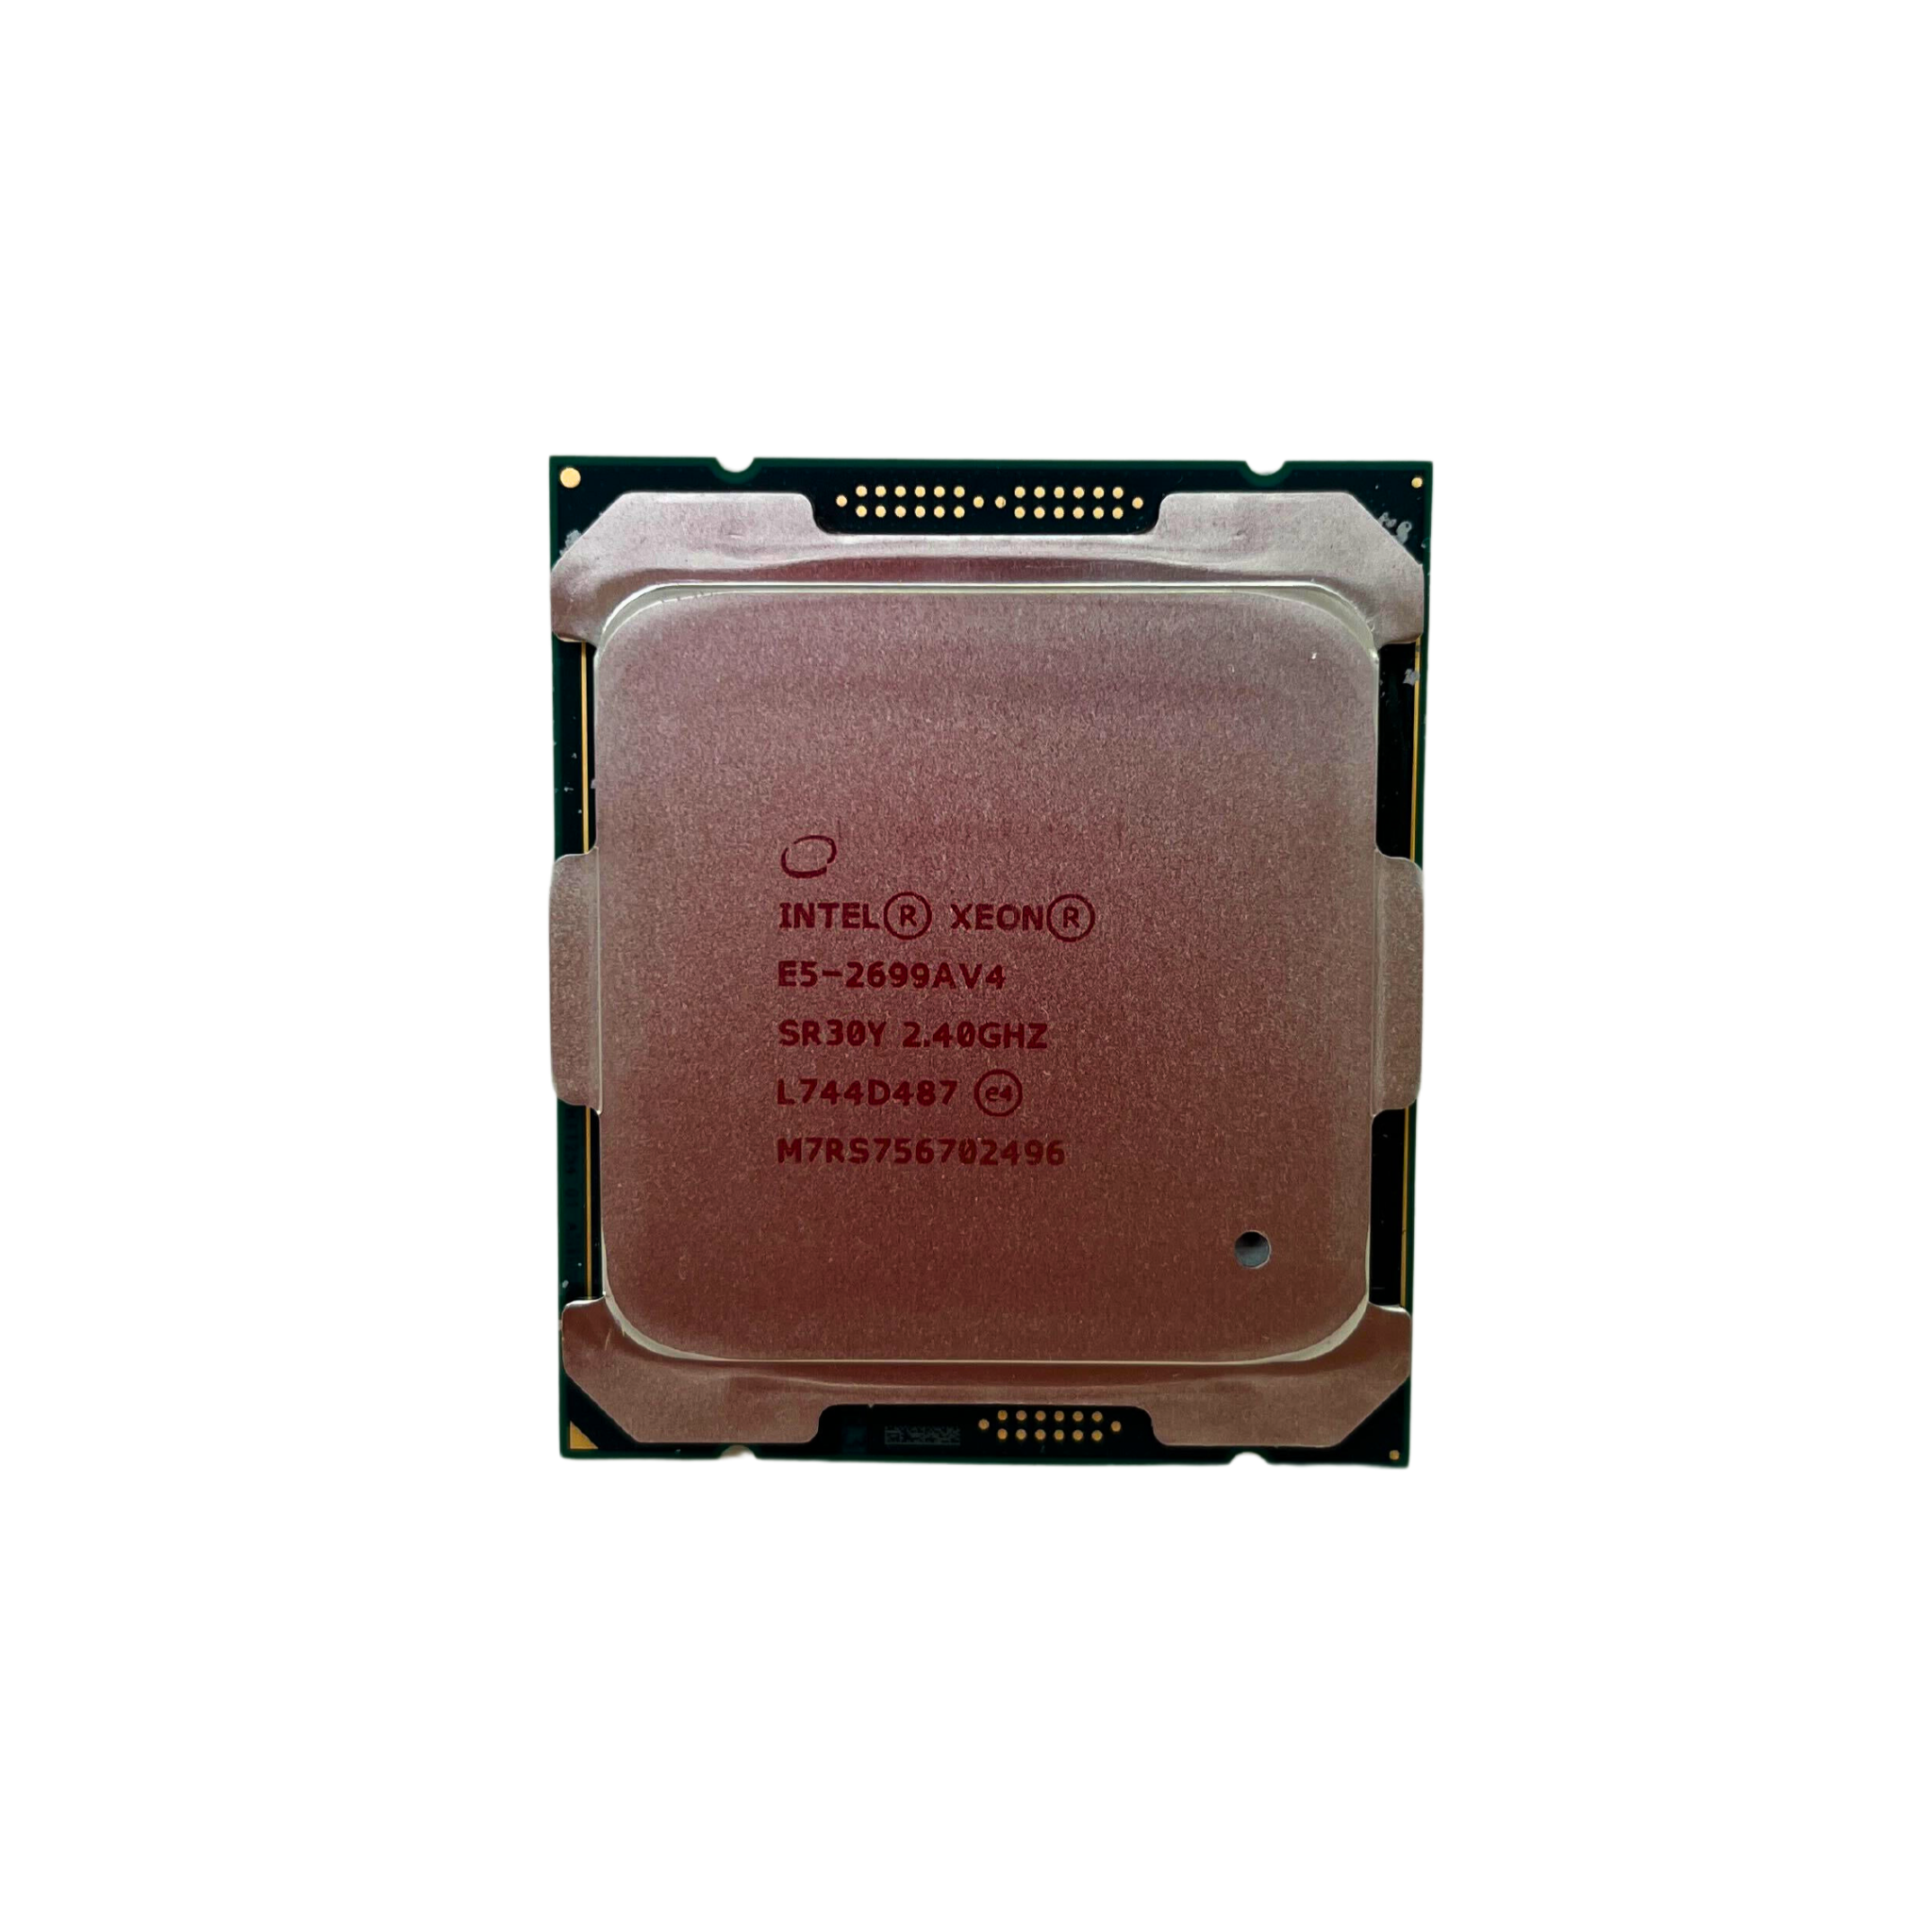  Intel Xeon E5-2699A v4 22 Cores 2.40GHz 9.60GT/s QPI 55MB L3 Cache FCLGA2011-3 145W CPU (CM8066003197800)